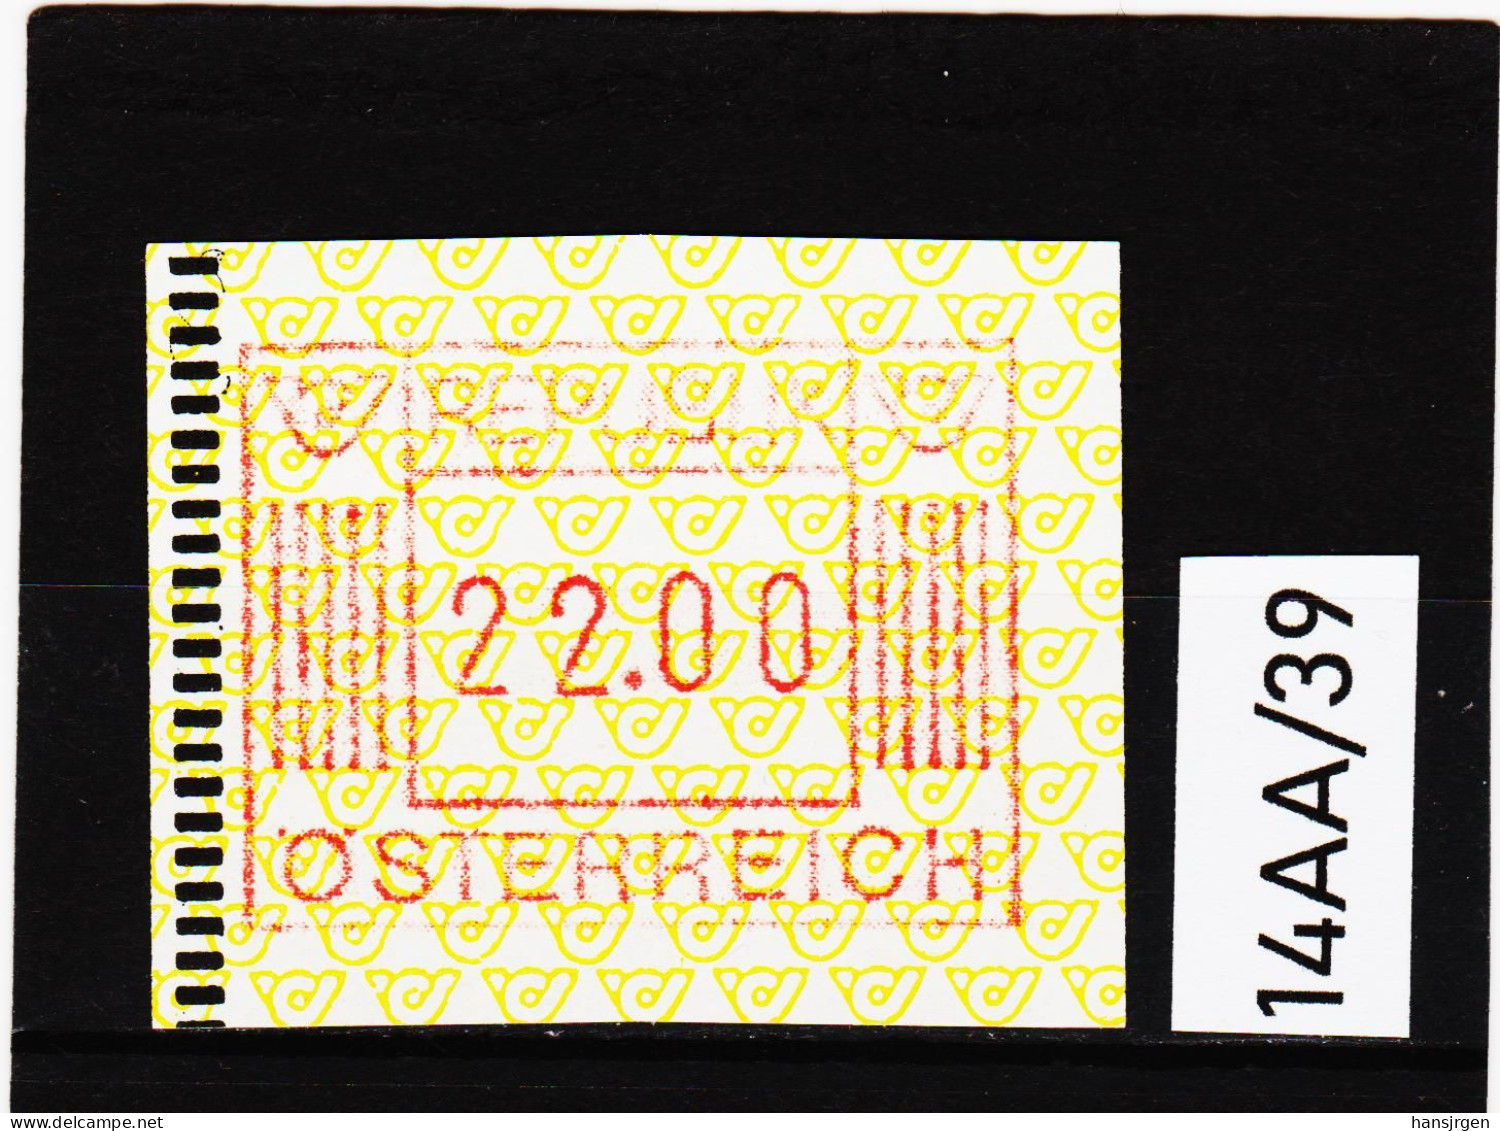 14AA/39  ÖSTERREICH 1983 AUTOMATENMARKEN 1. AUSGABE  22,00 SCHILLING   ** Postfrisch - Machine Labels [ATM]